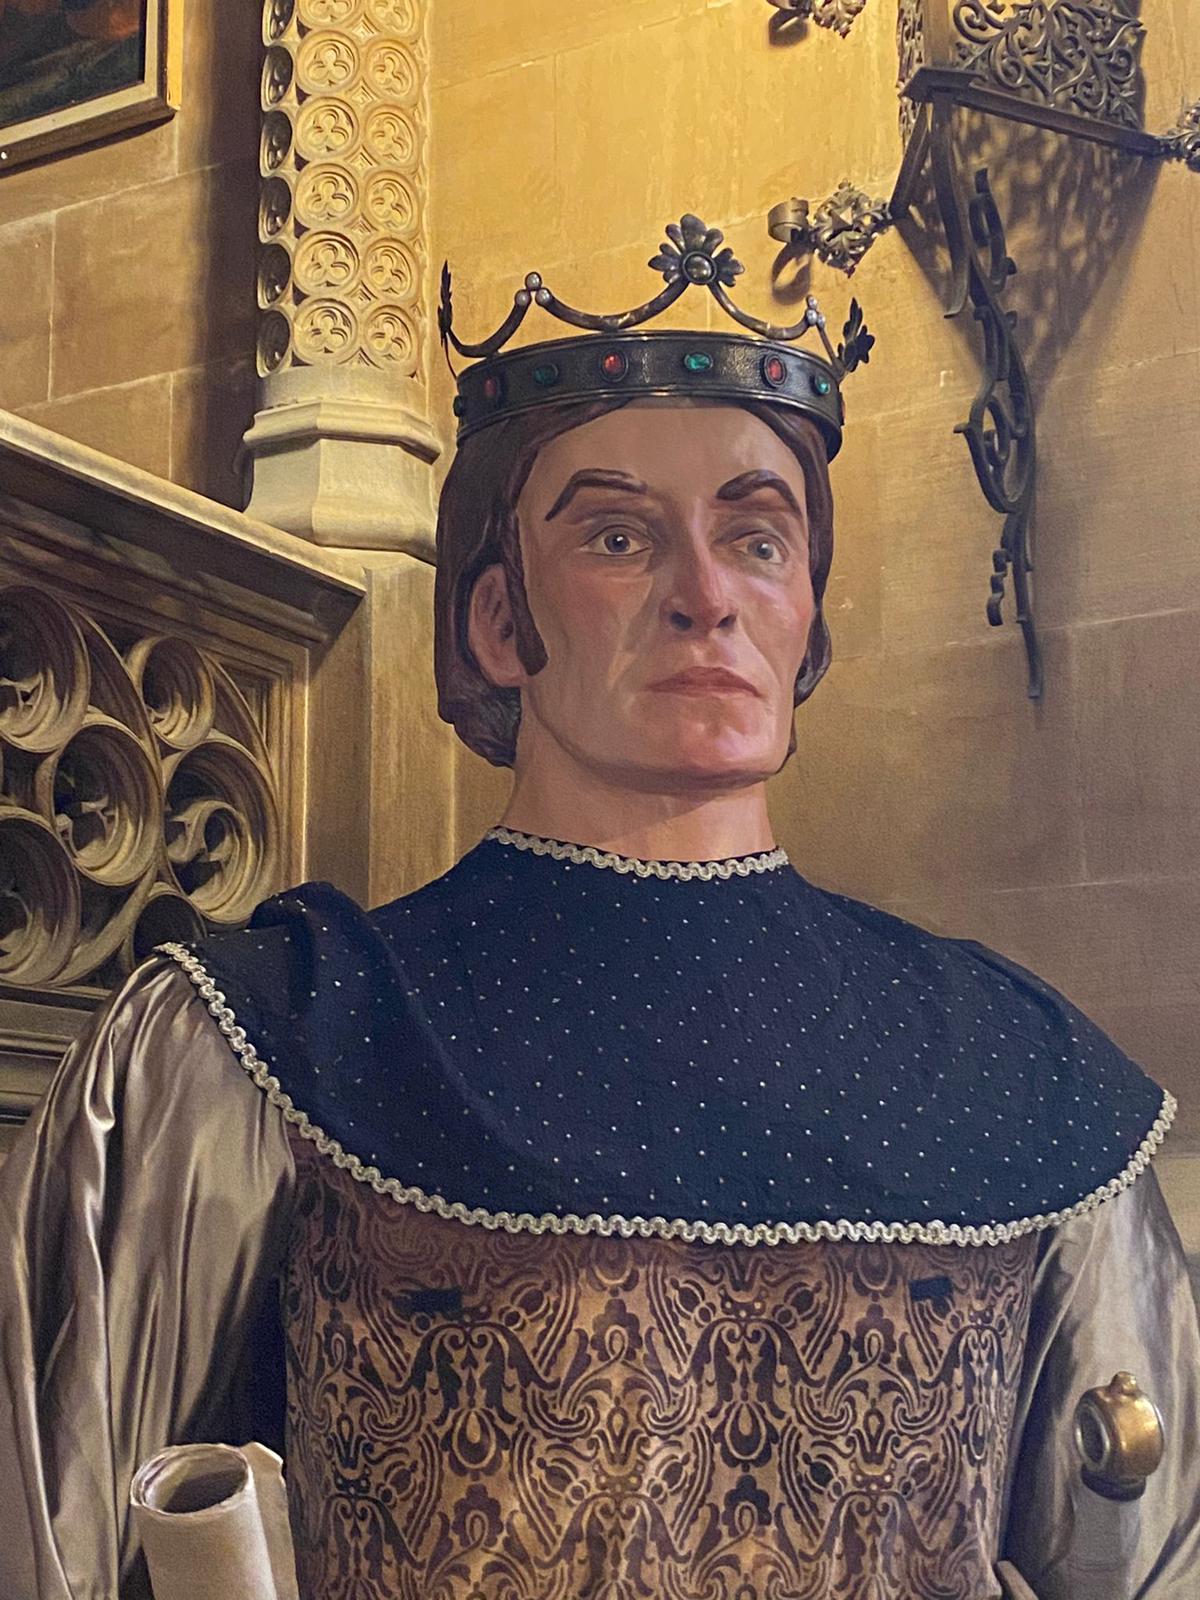 El gegant Jaume III després de la restauració